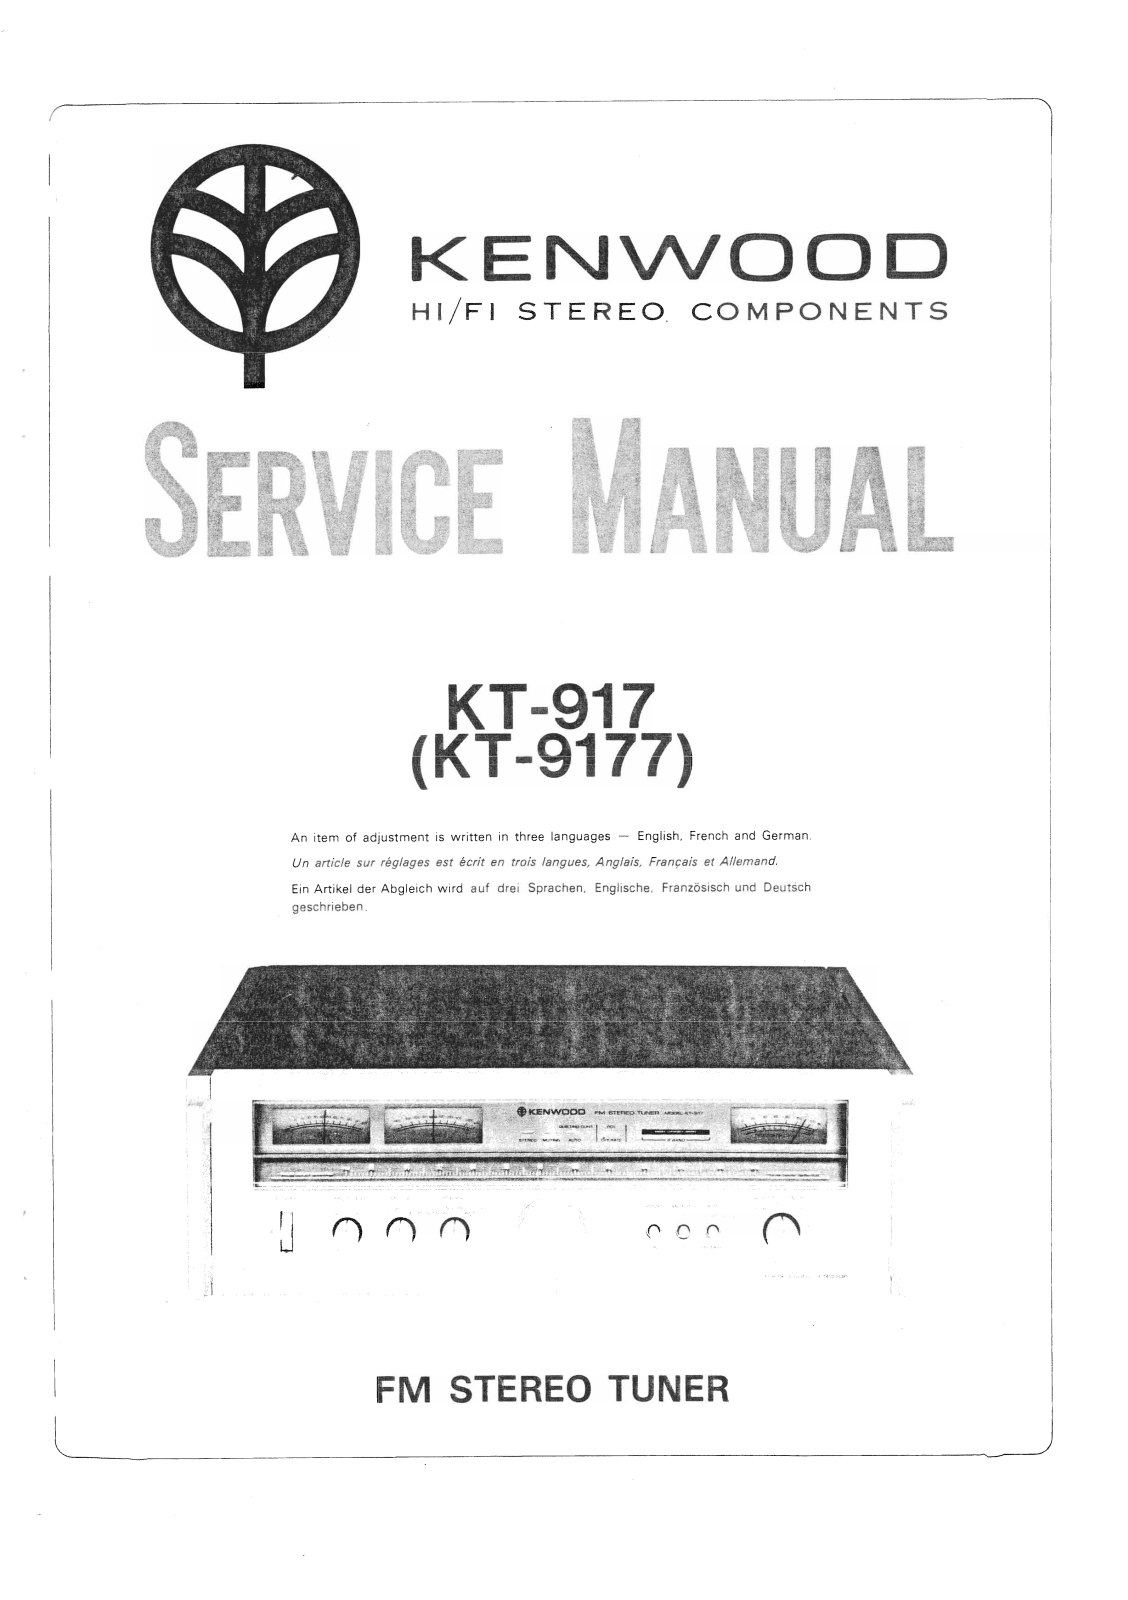 Kenwood KT-917 Service Manual